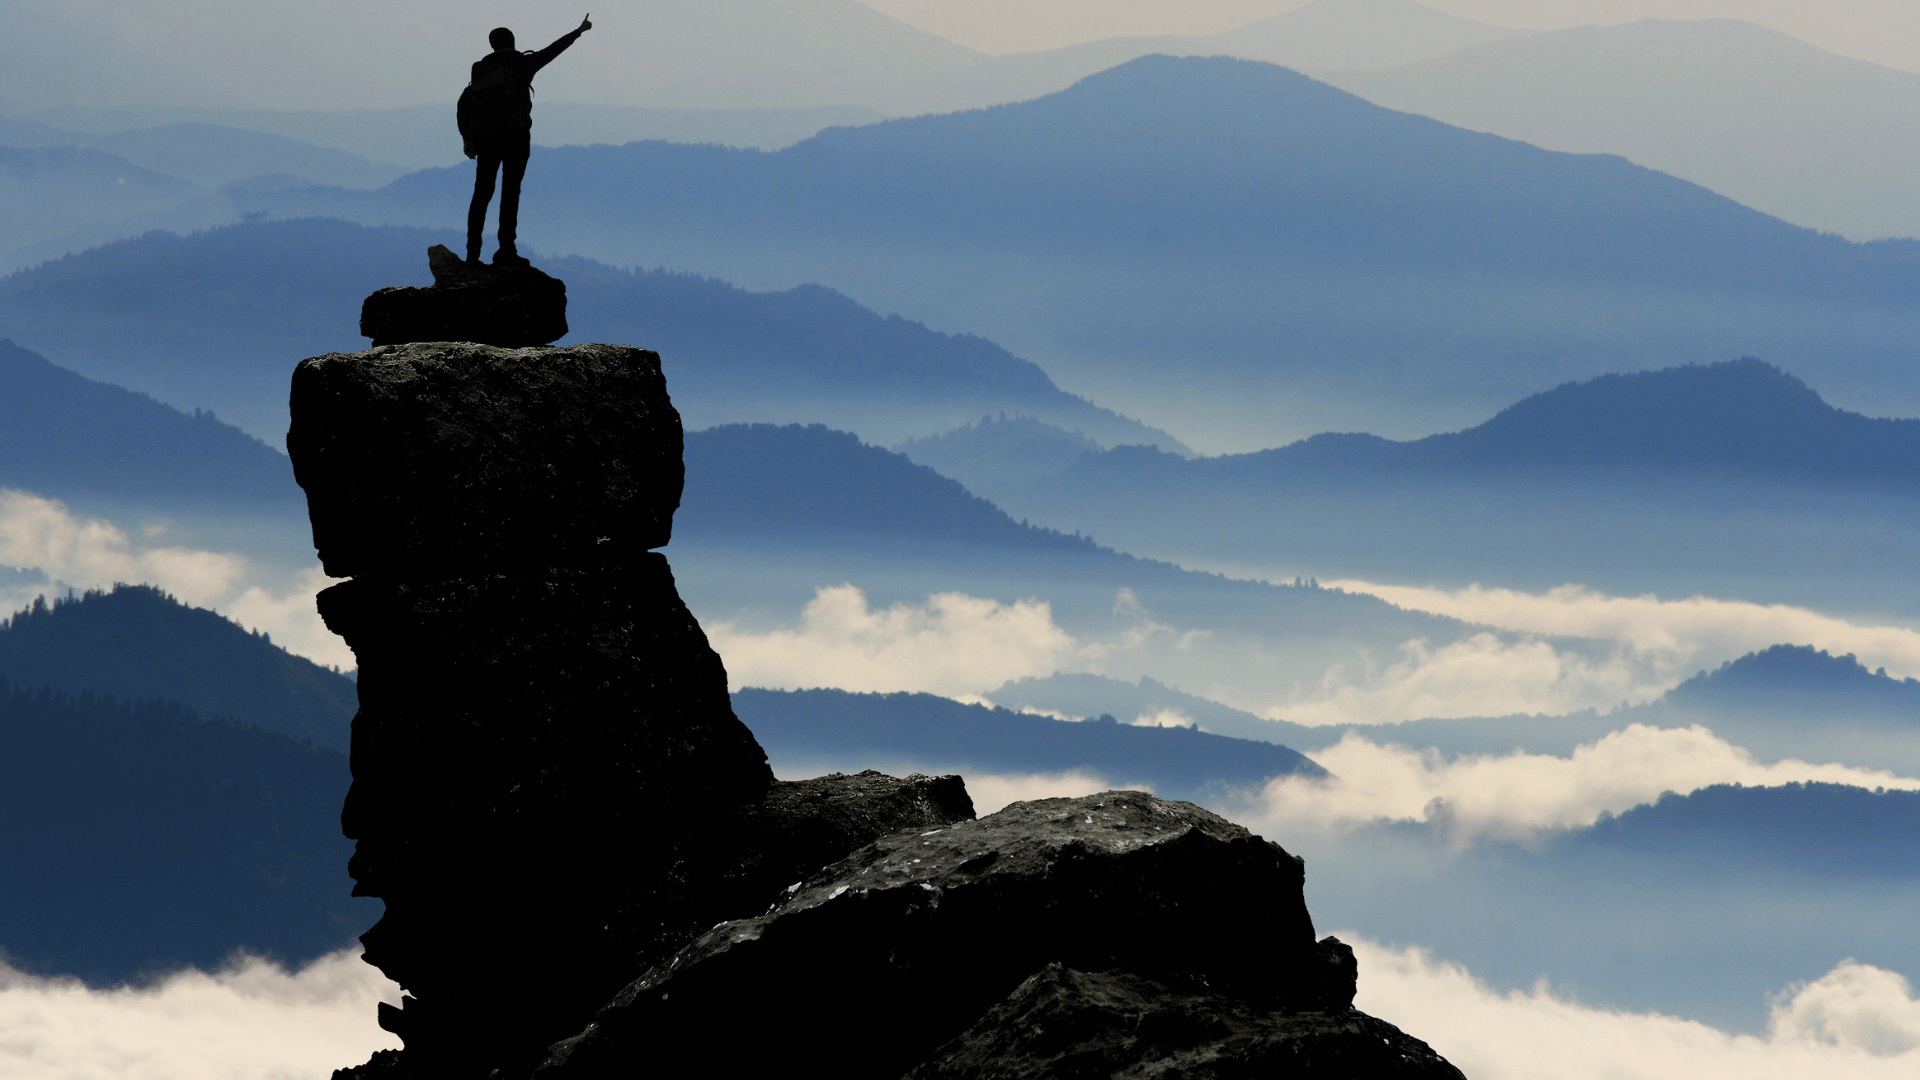 Homem de pé sobre uma montanha de pedras. Ele está com uma mochila nas costas. Ao fundo montanhas e nuvens de tons azuis e branco.